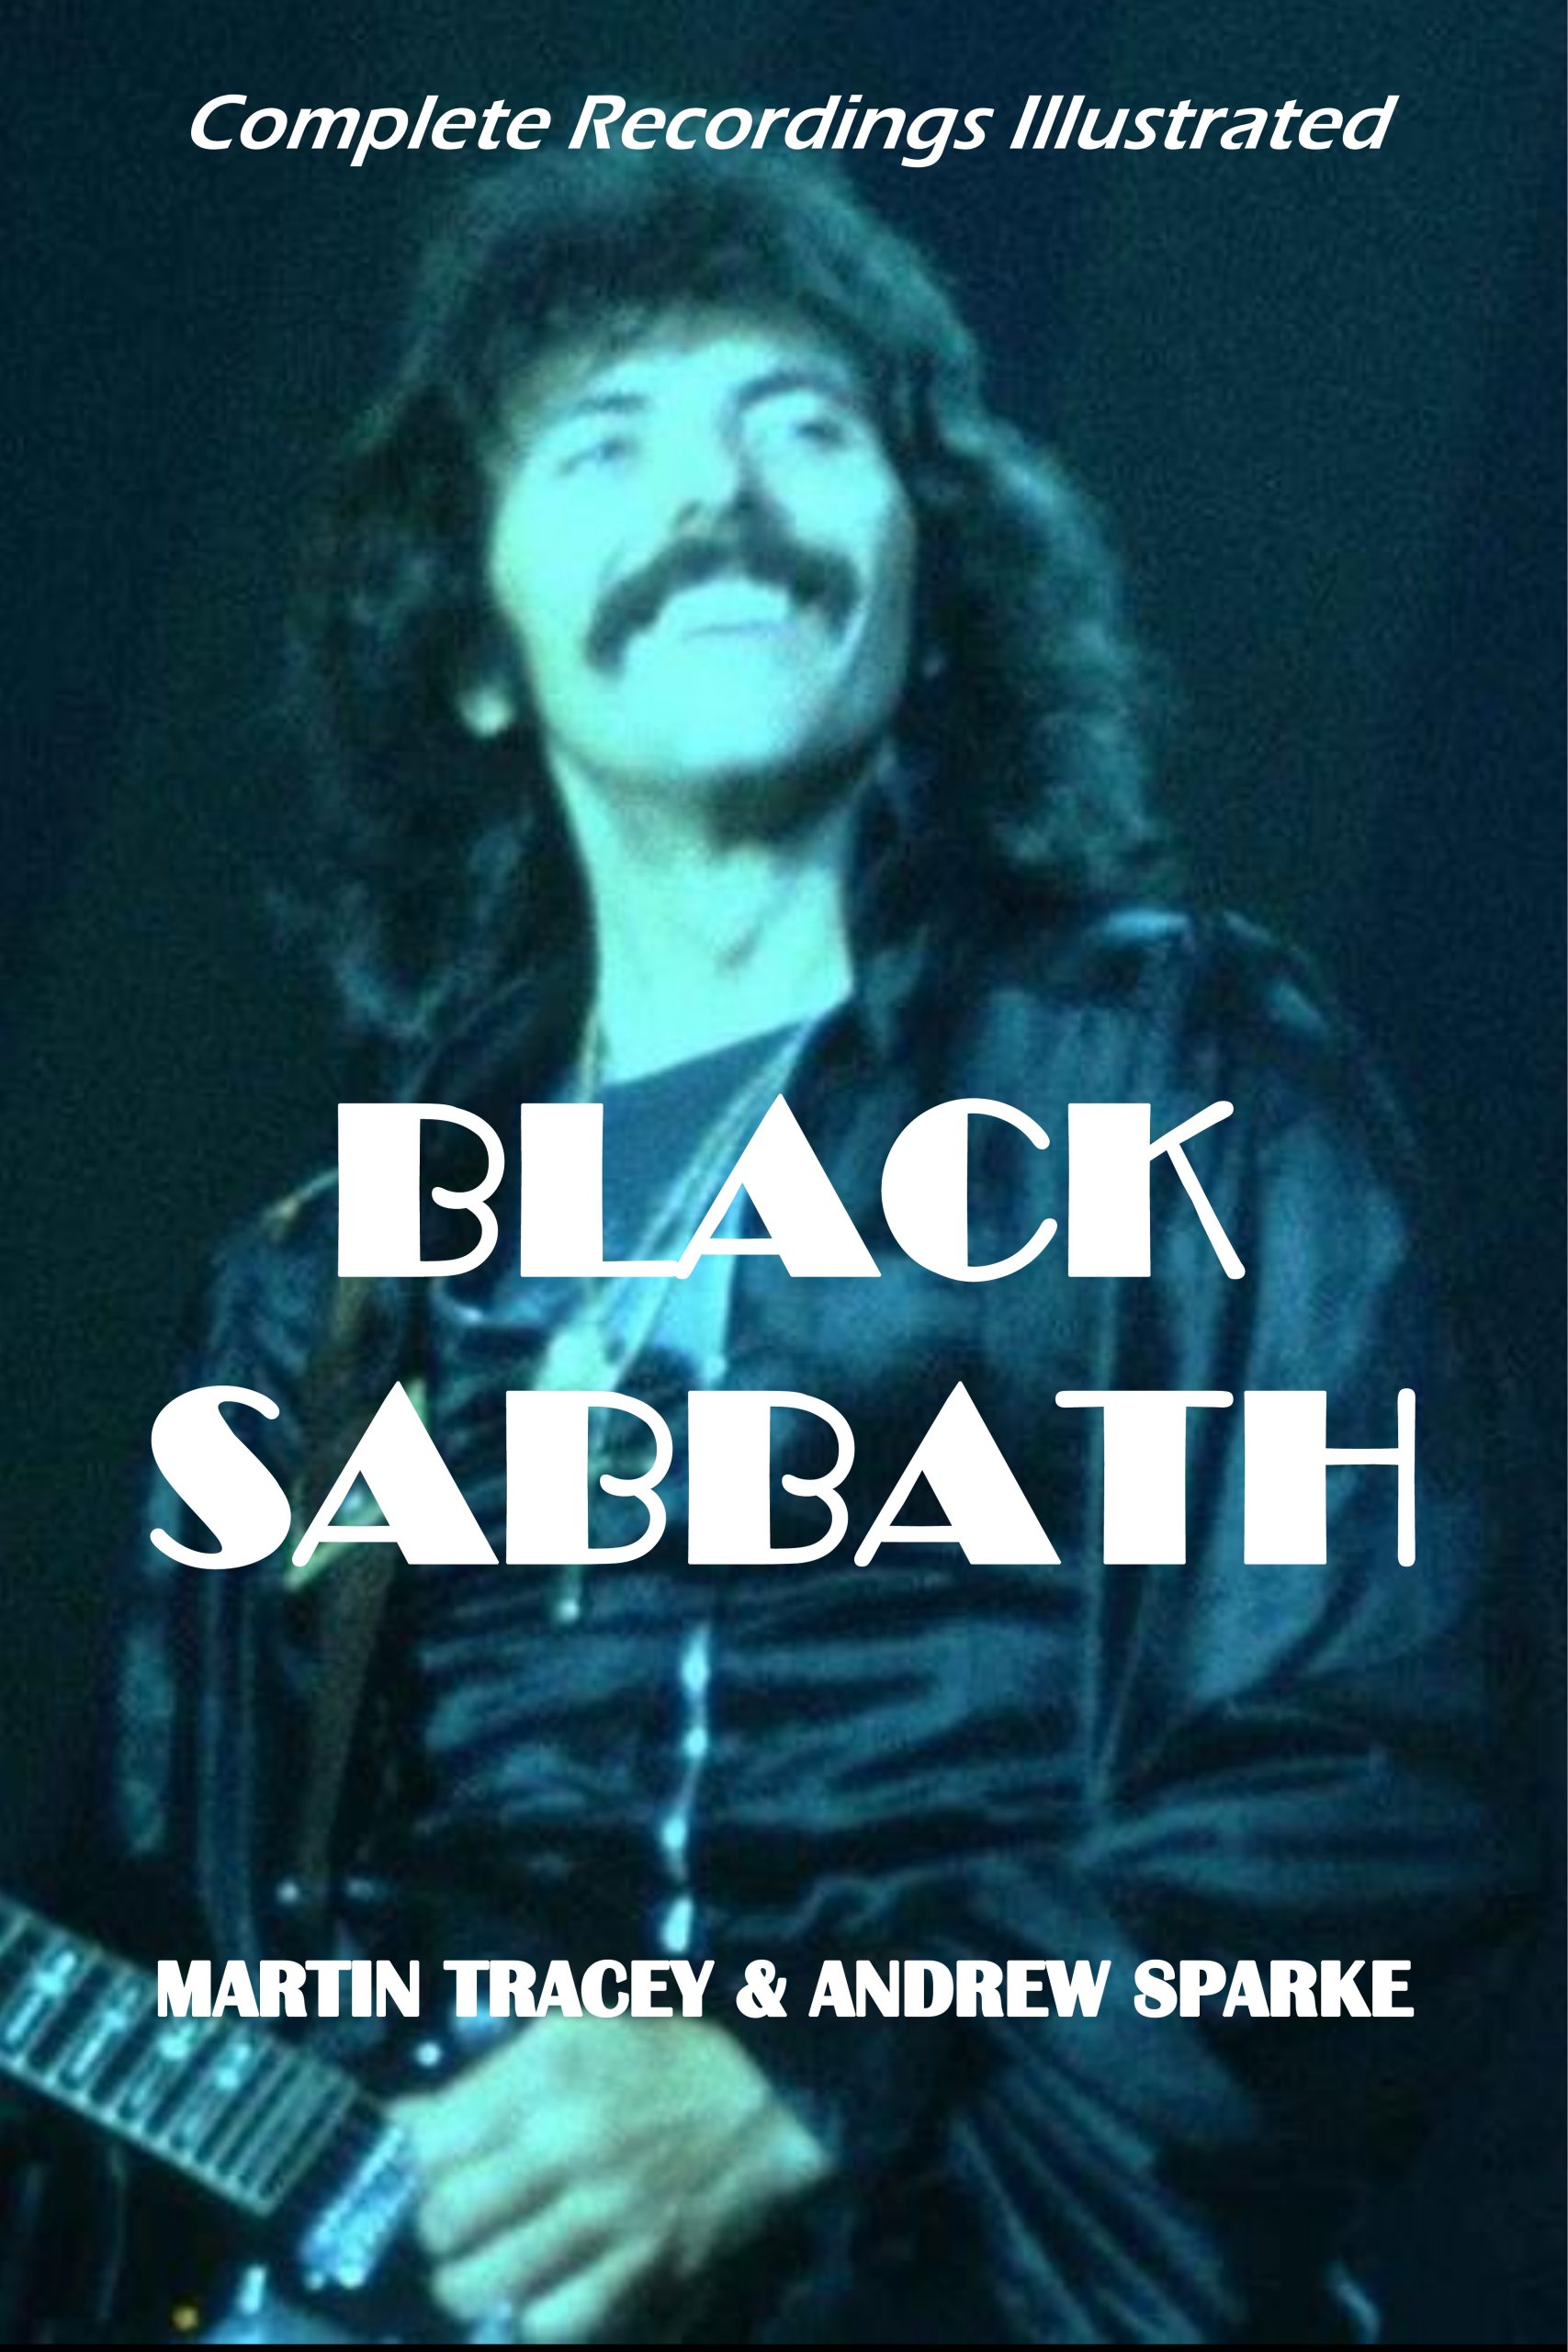 book cover discography Black Sabbath